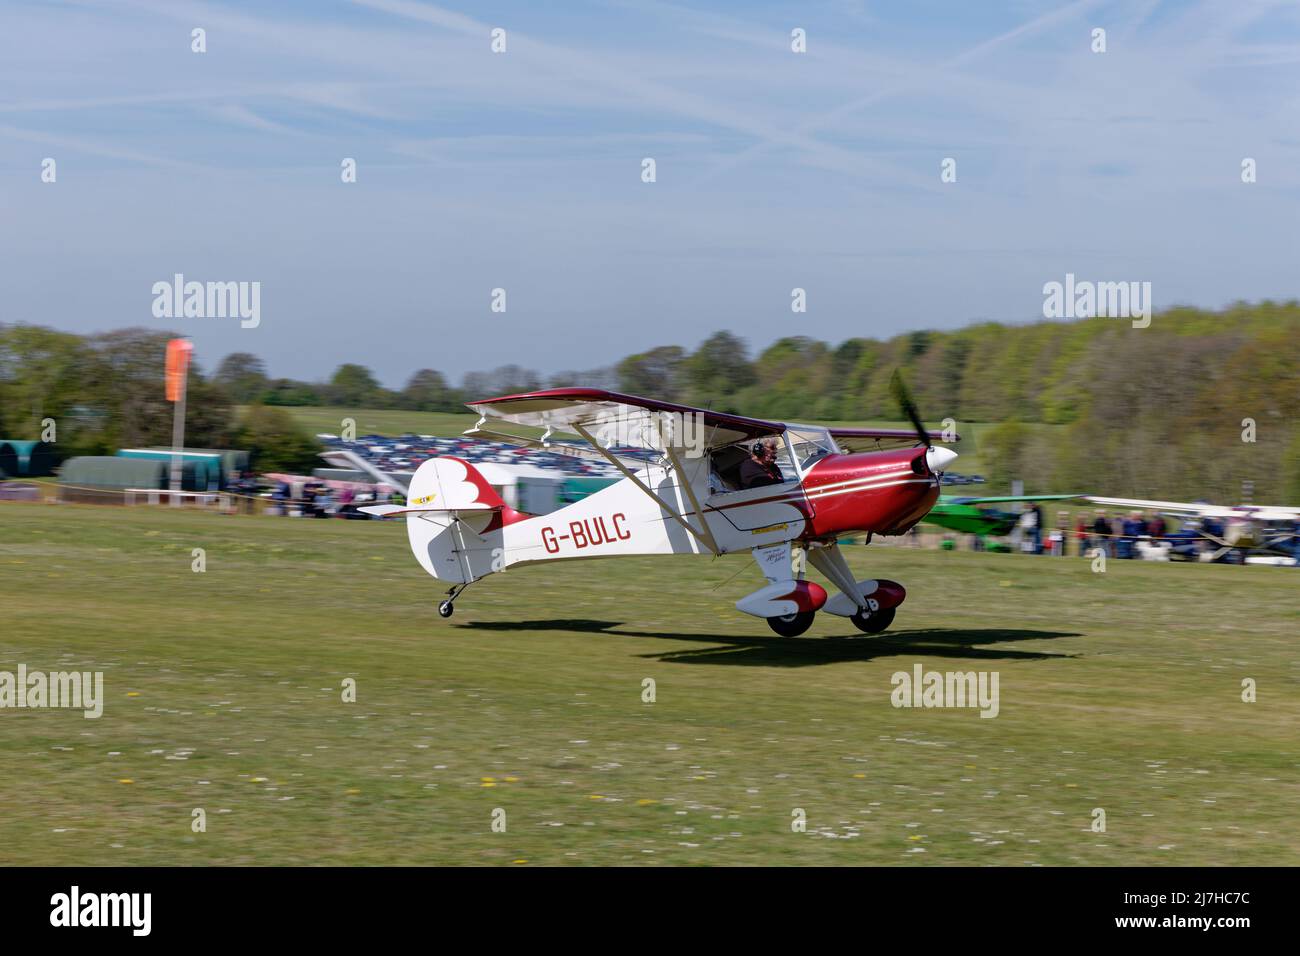 Kit rouge et blanc avion un avion Avid Flyer enregistrement G-BULC arrive à l'aérodrome de Popham, dans le Hampshire, en Angleterre, pour assister au vol annuel de l'avion microléger Banque D'Images